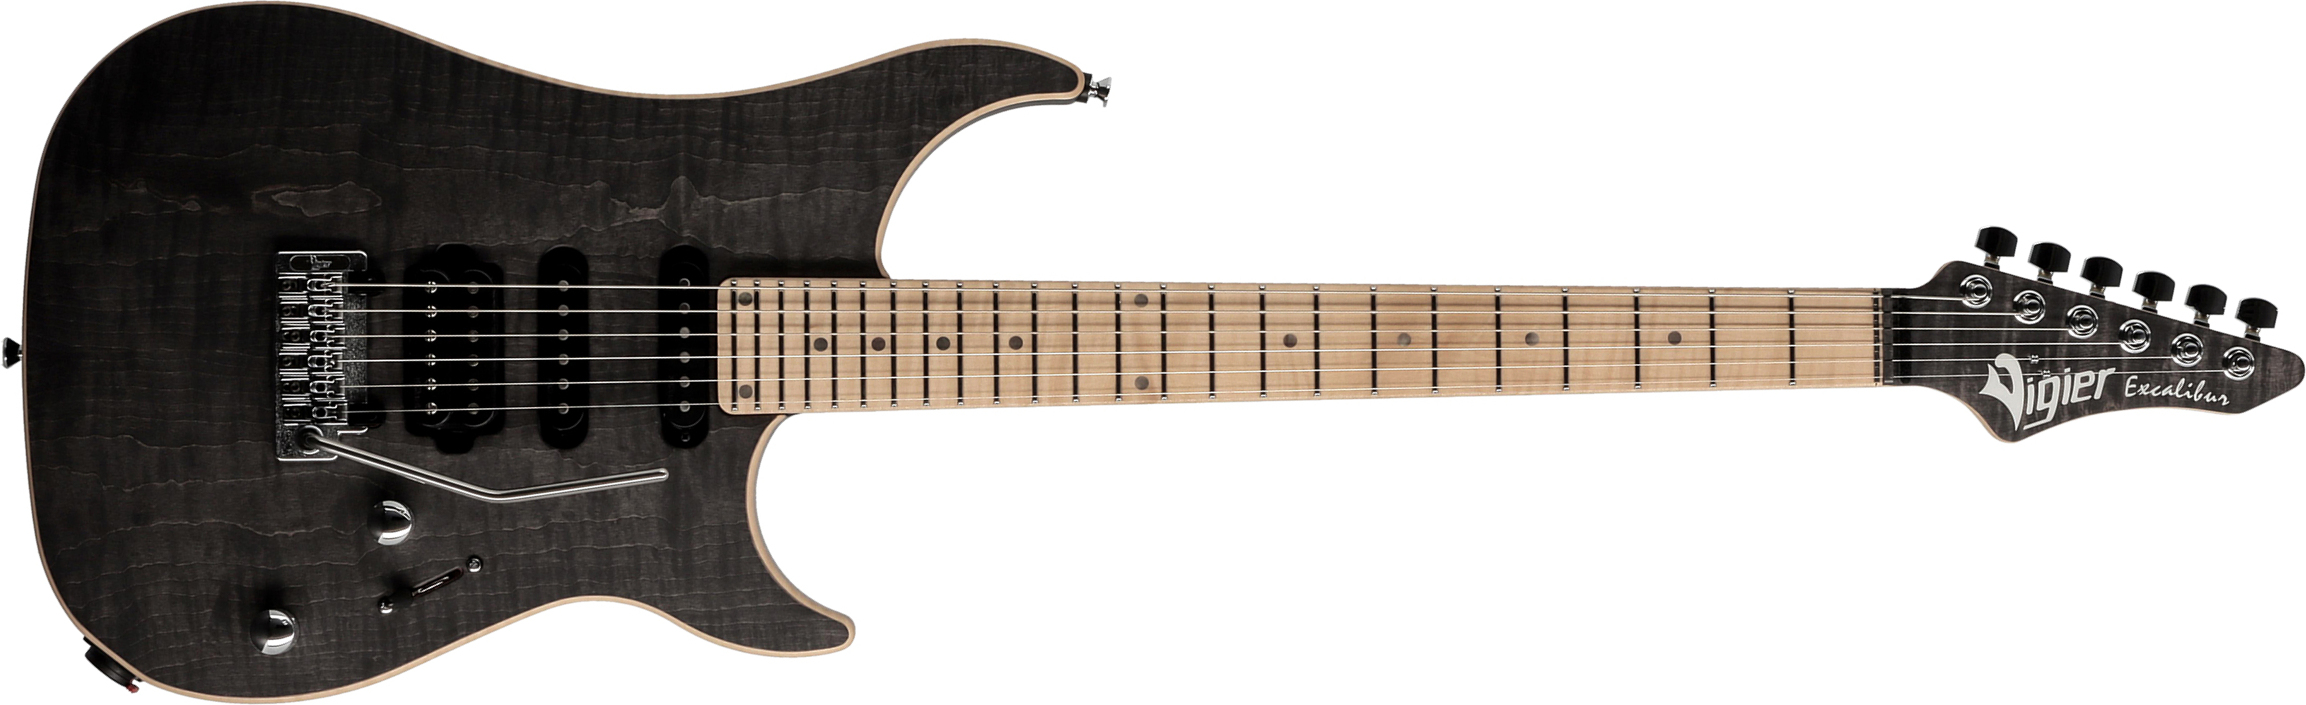 Vigier Excalibur Ultra Blues Hss Trem Mn - Black Diamond - Str shape electric guitar - Main picture